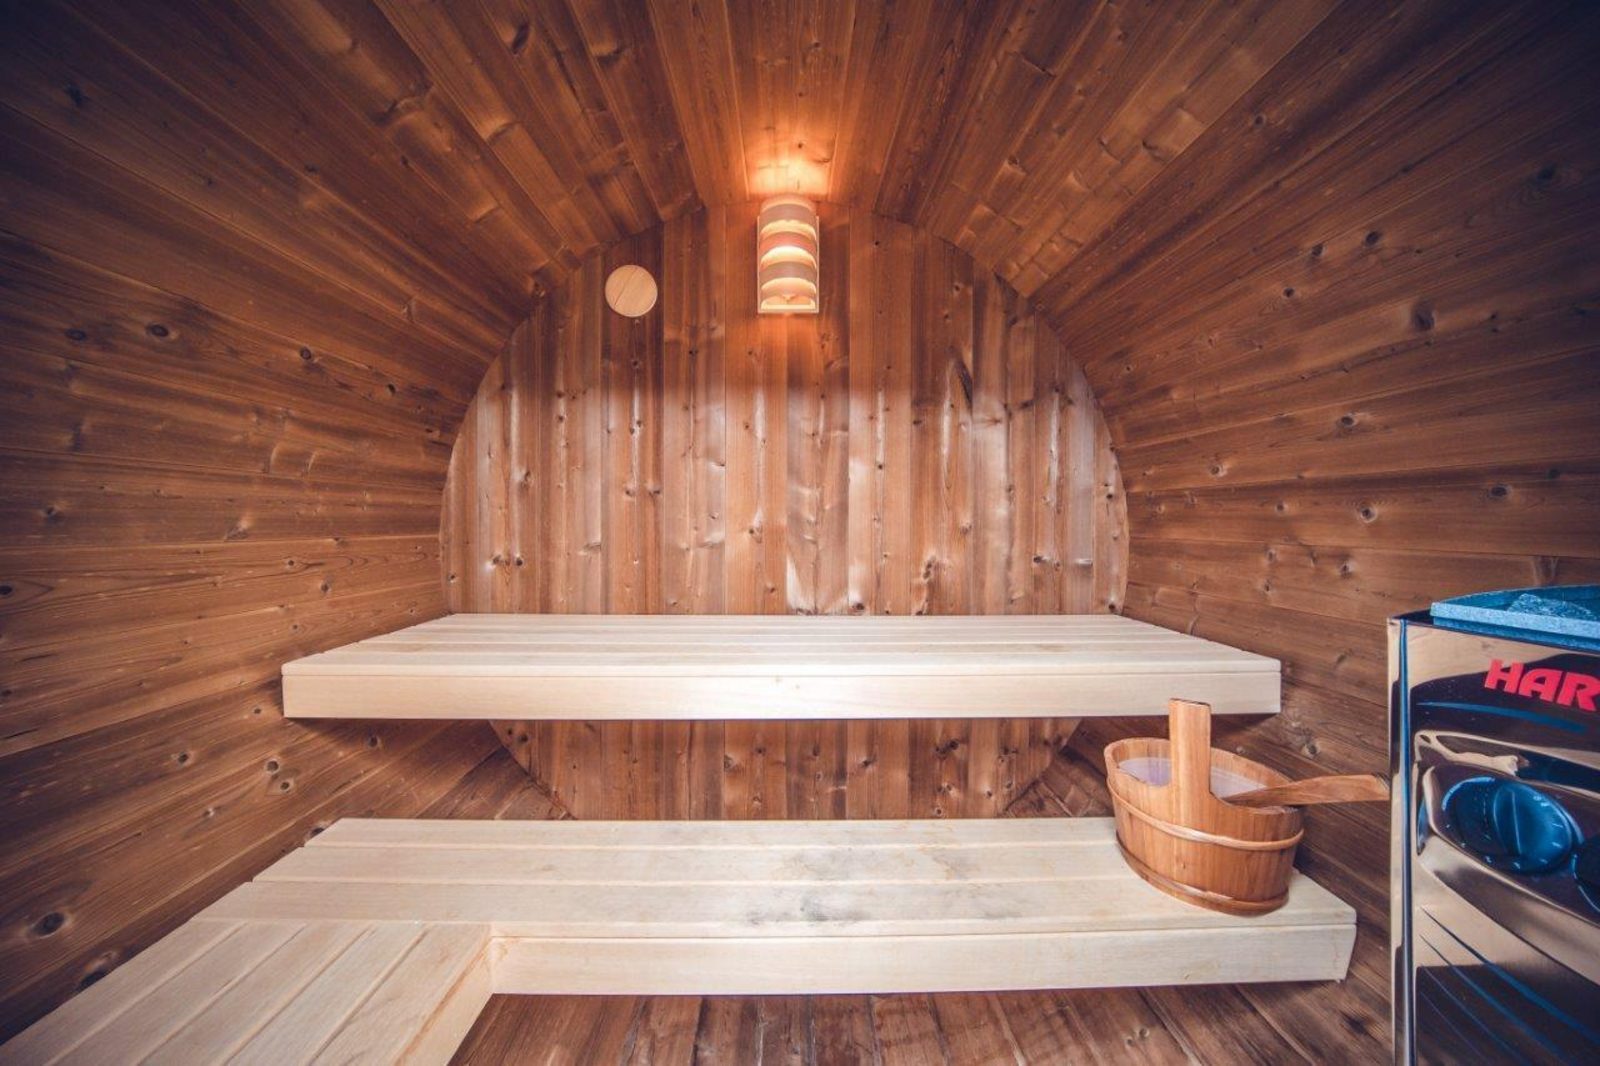 Jachtchalet met sauna | 4 pers.